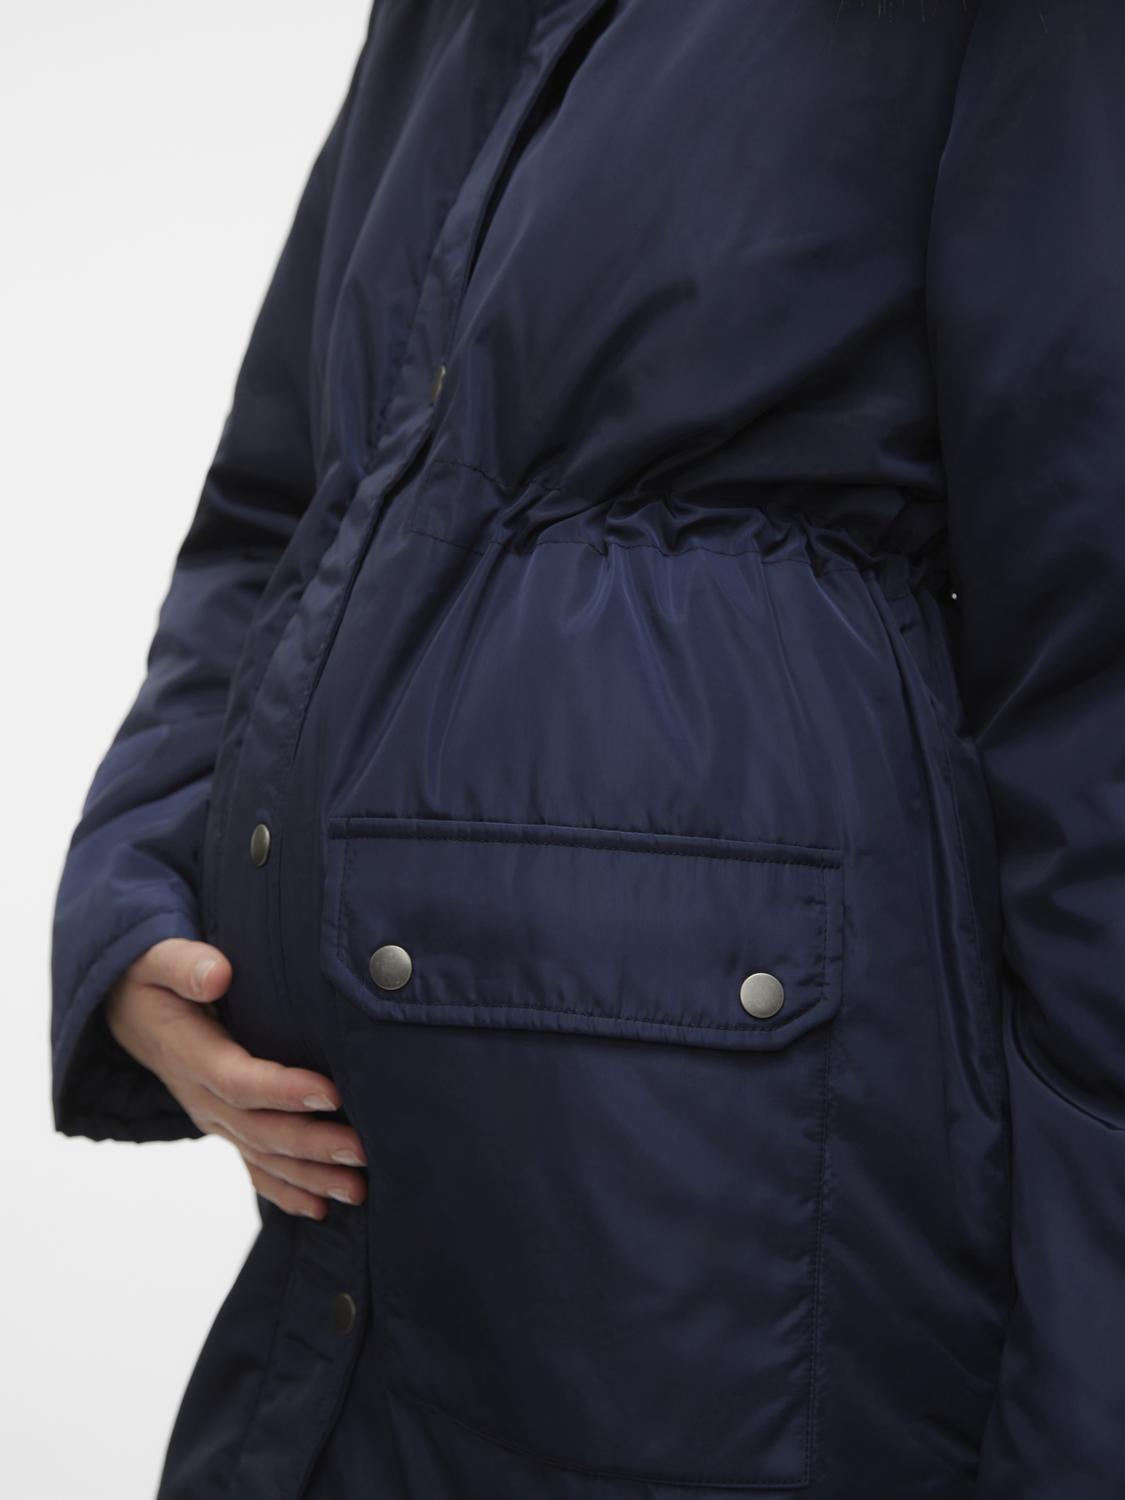 MAMA.LICIOUS Maternity-jacket -Navy Blazer - 20019959